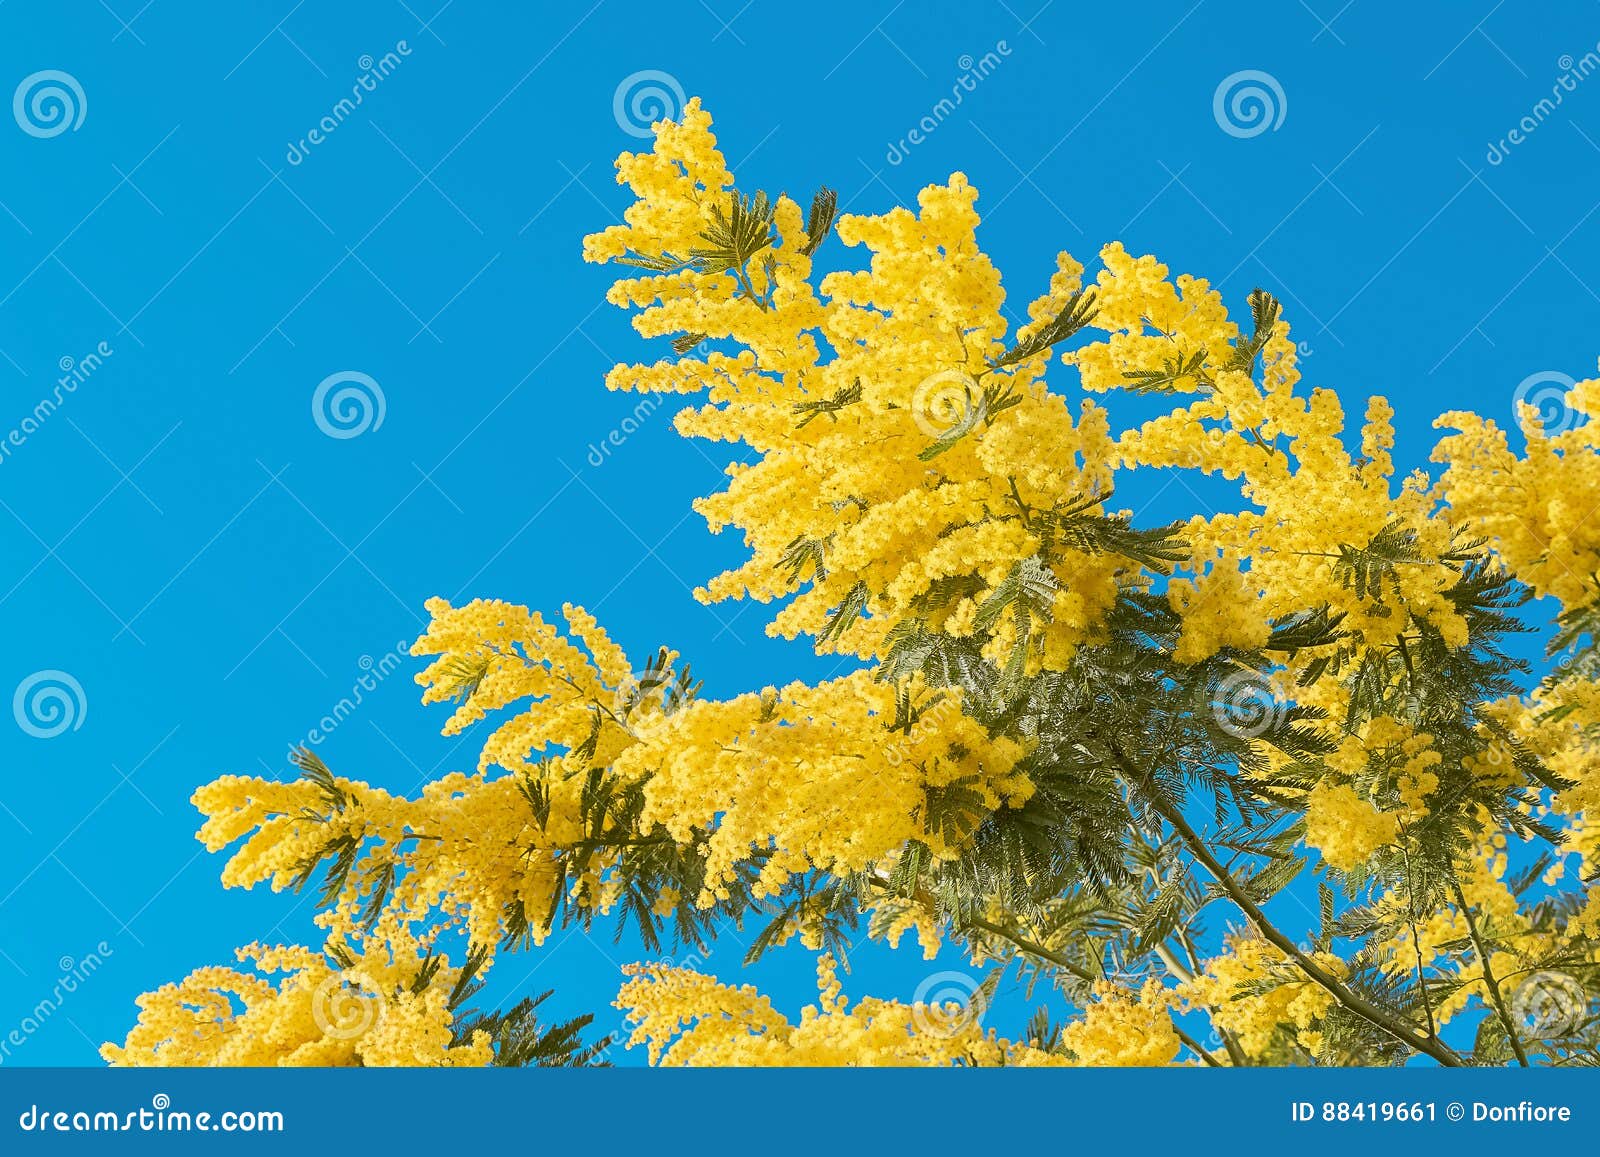 Flor Amarela Da Mimosa Com a Folha Na árvore No Céu Azul, Dia Das Mulheres  Do Símbolo Imagem de Stock - Imagem de fundo, igualdade: 88419661